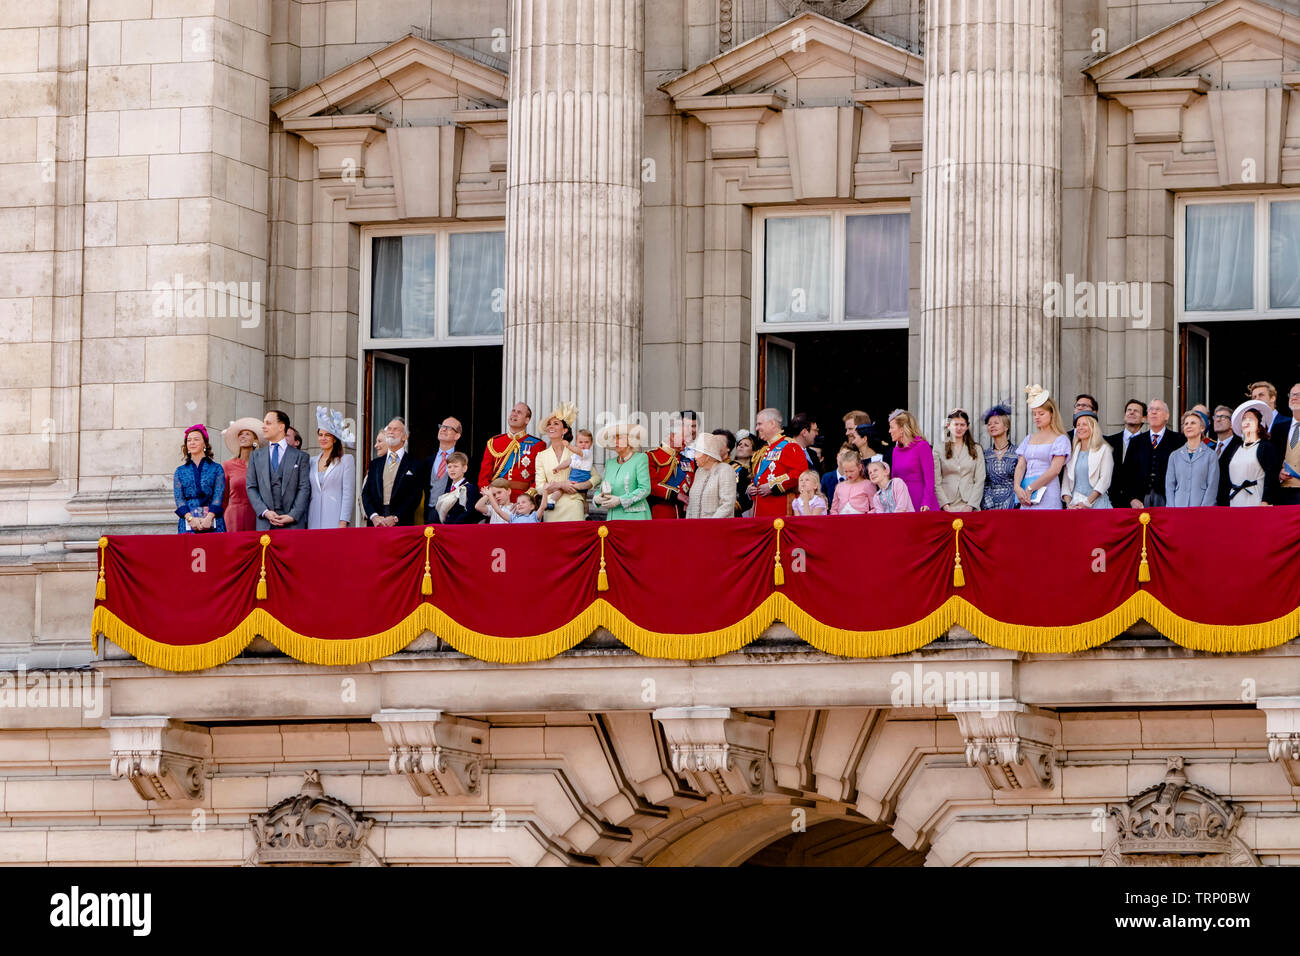 Die Königin und Mitglieder der königlichen Familie treffen sich auf dem Balkon des Buckingham Palace nach der Trooping the Color Parade, London, Großbritannien, 2019 Stockfoto